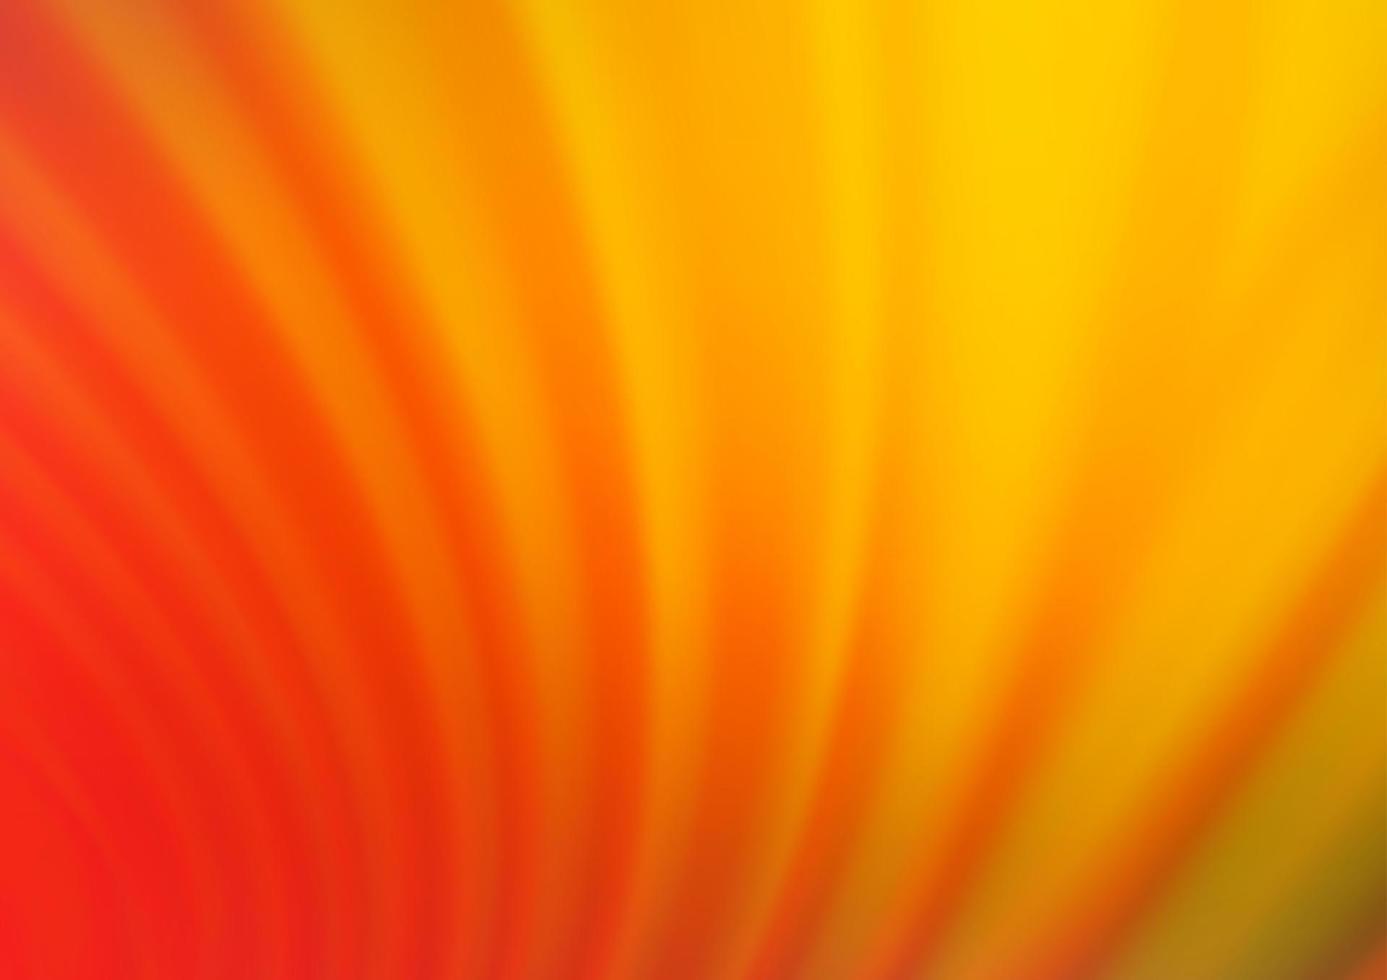 ljusgul, orange vektor abstrakt suddigt mönster.